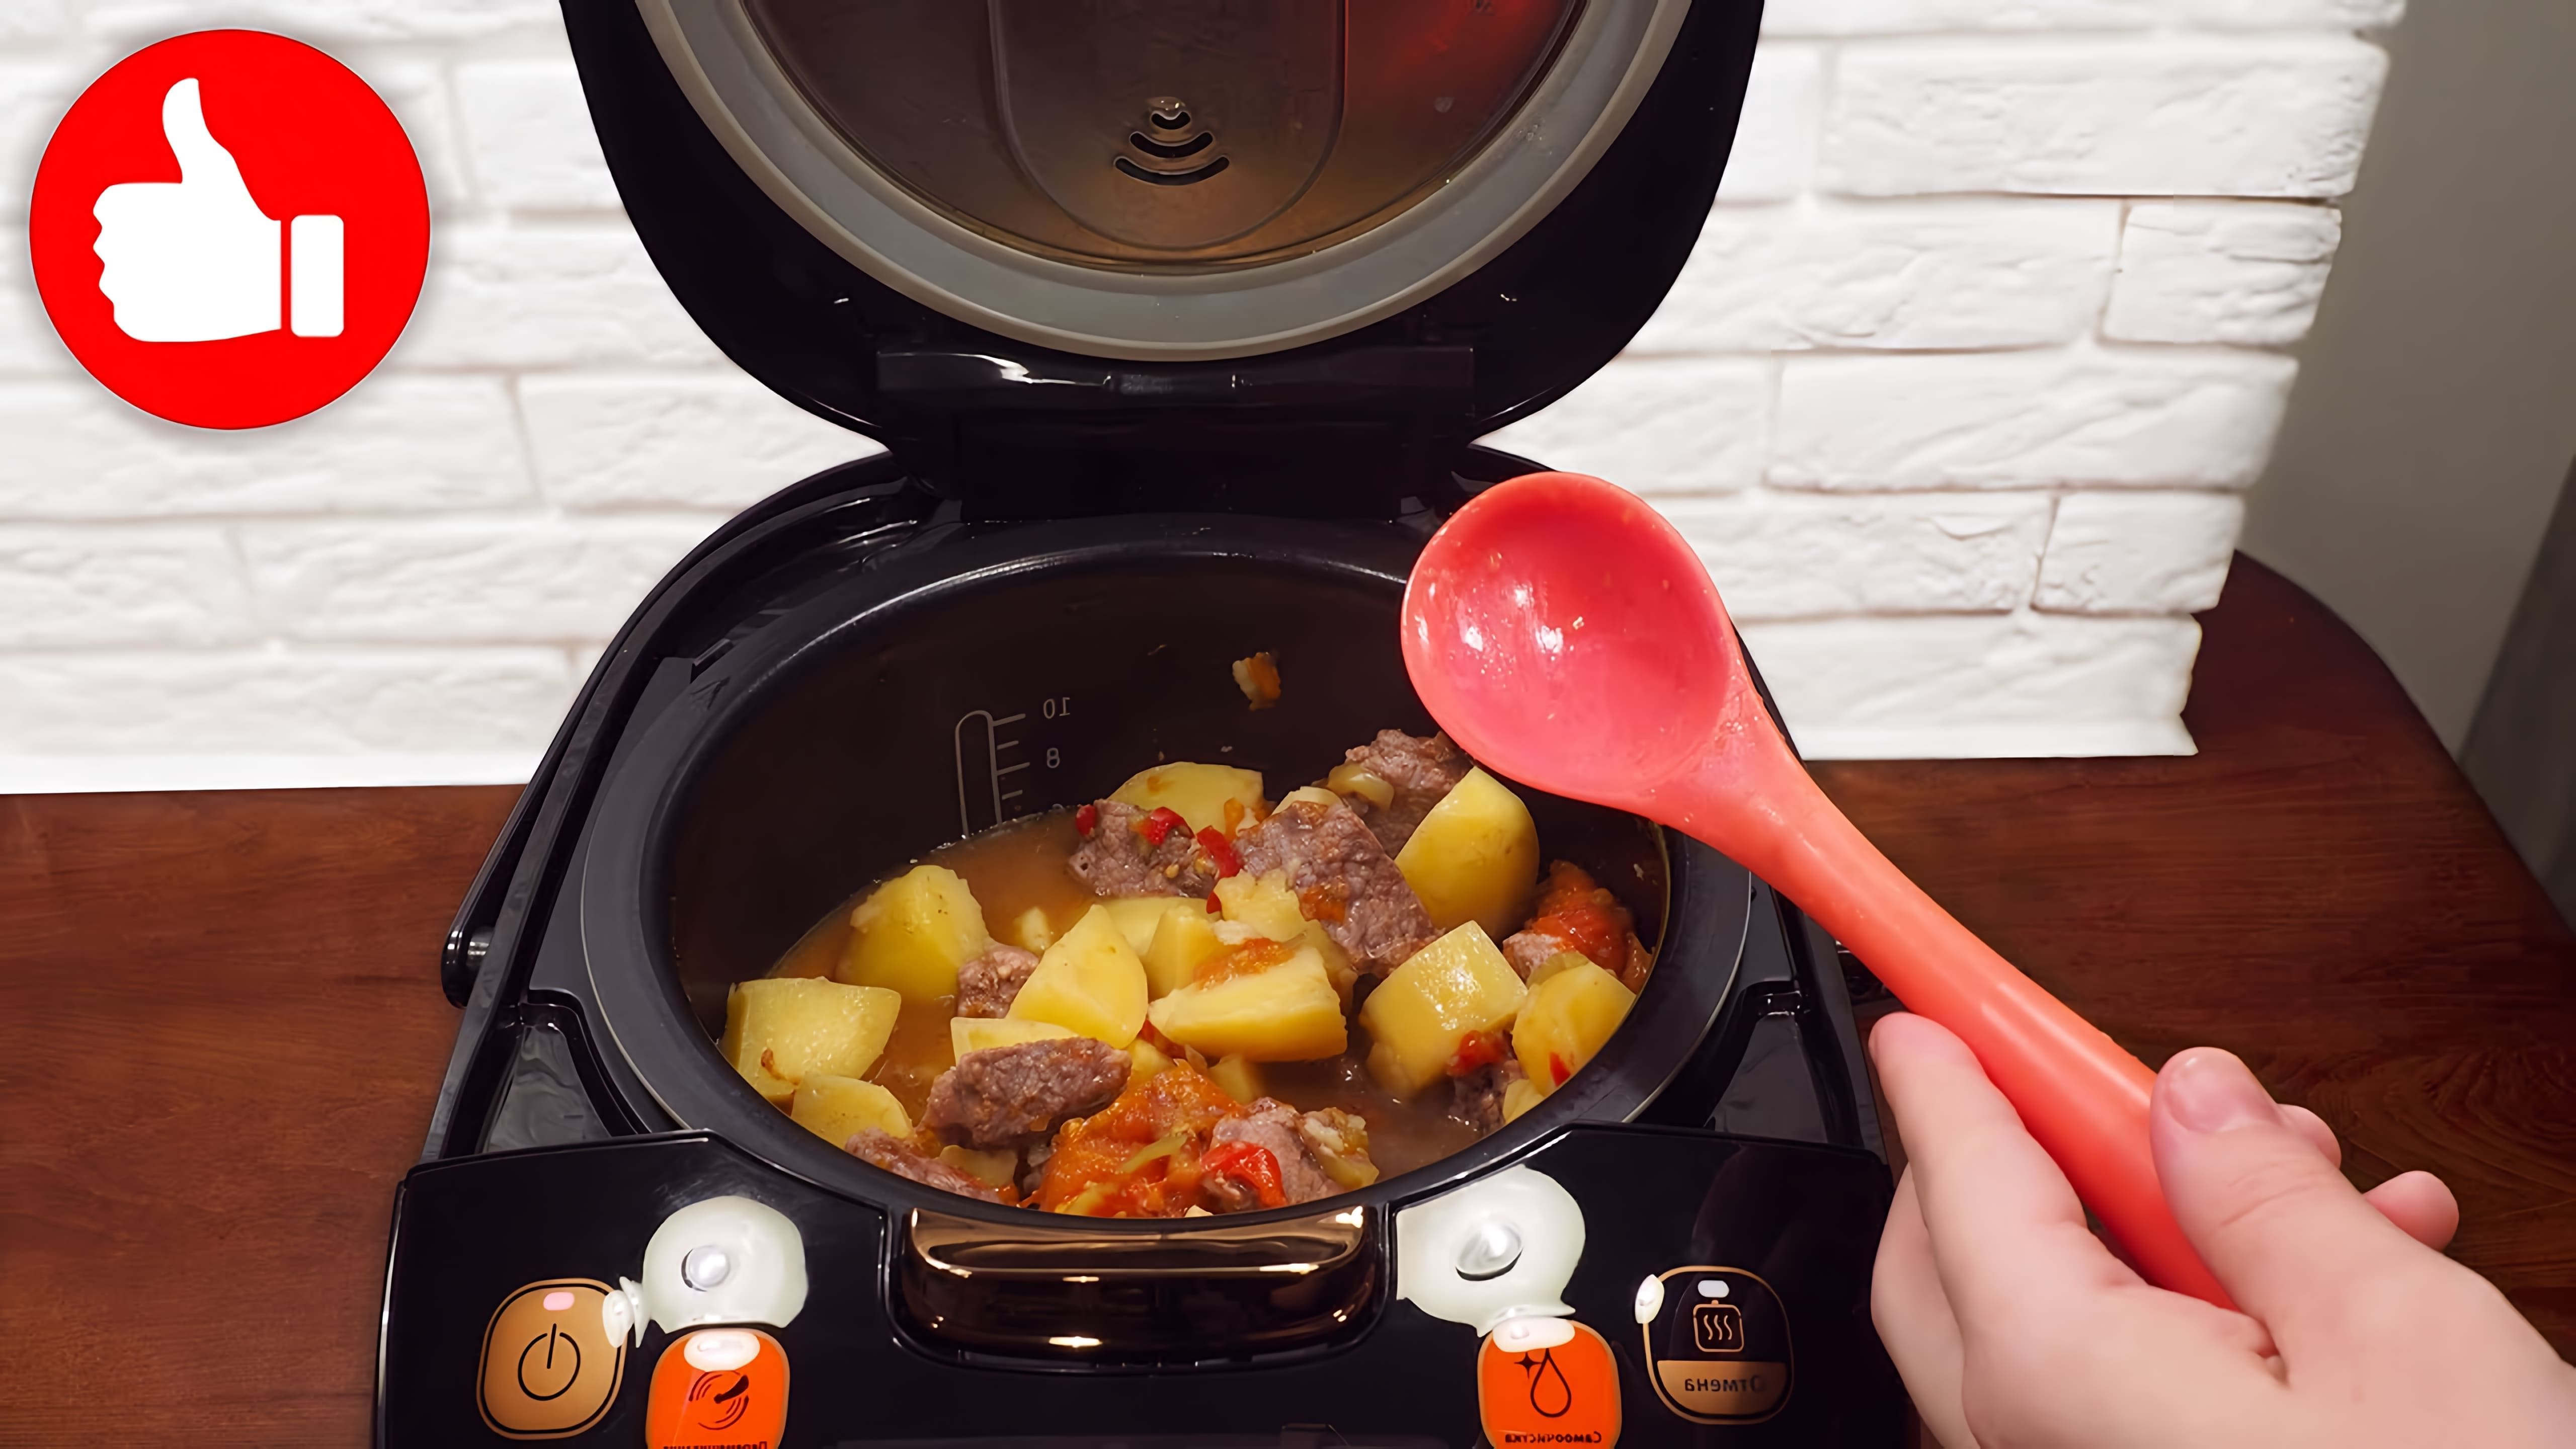 В этом видео демонстрируется процесс приготовления вкусного и сытного блюда - говядины с помидорами, картофелем и сладким перцем в мультиварке